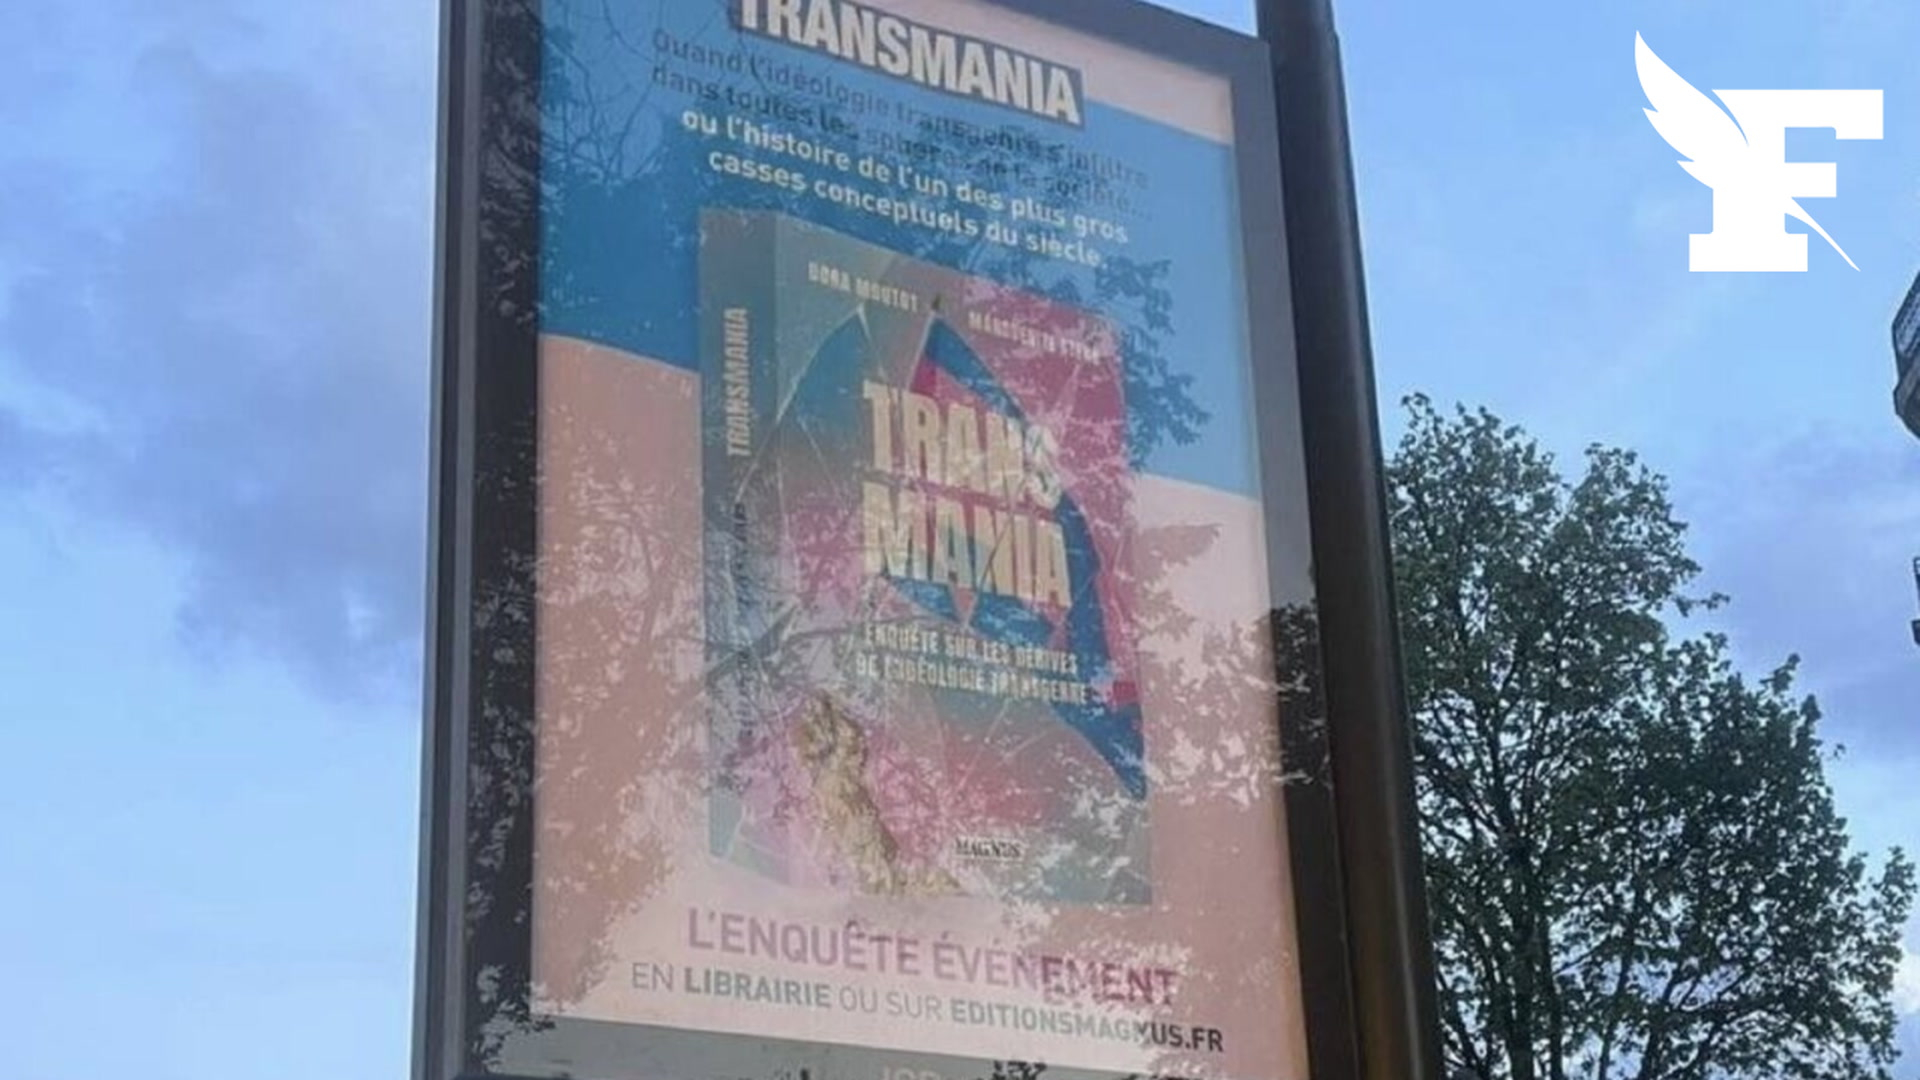 Transition de genre: la mairie dénonce la publicité faite au livre Transmania ,jugé transphobe